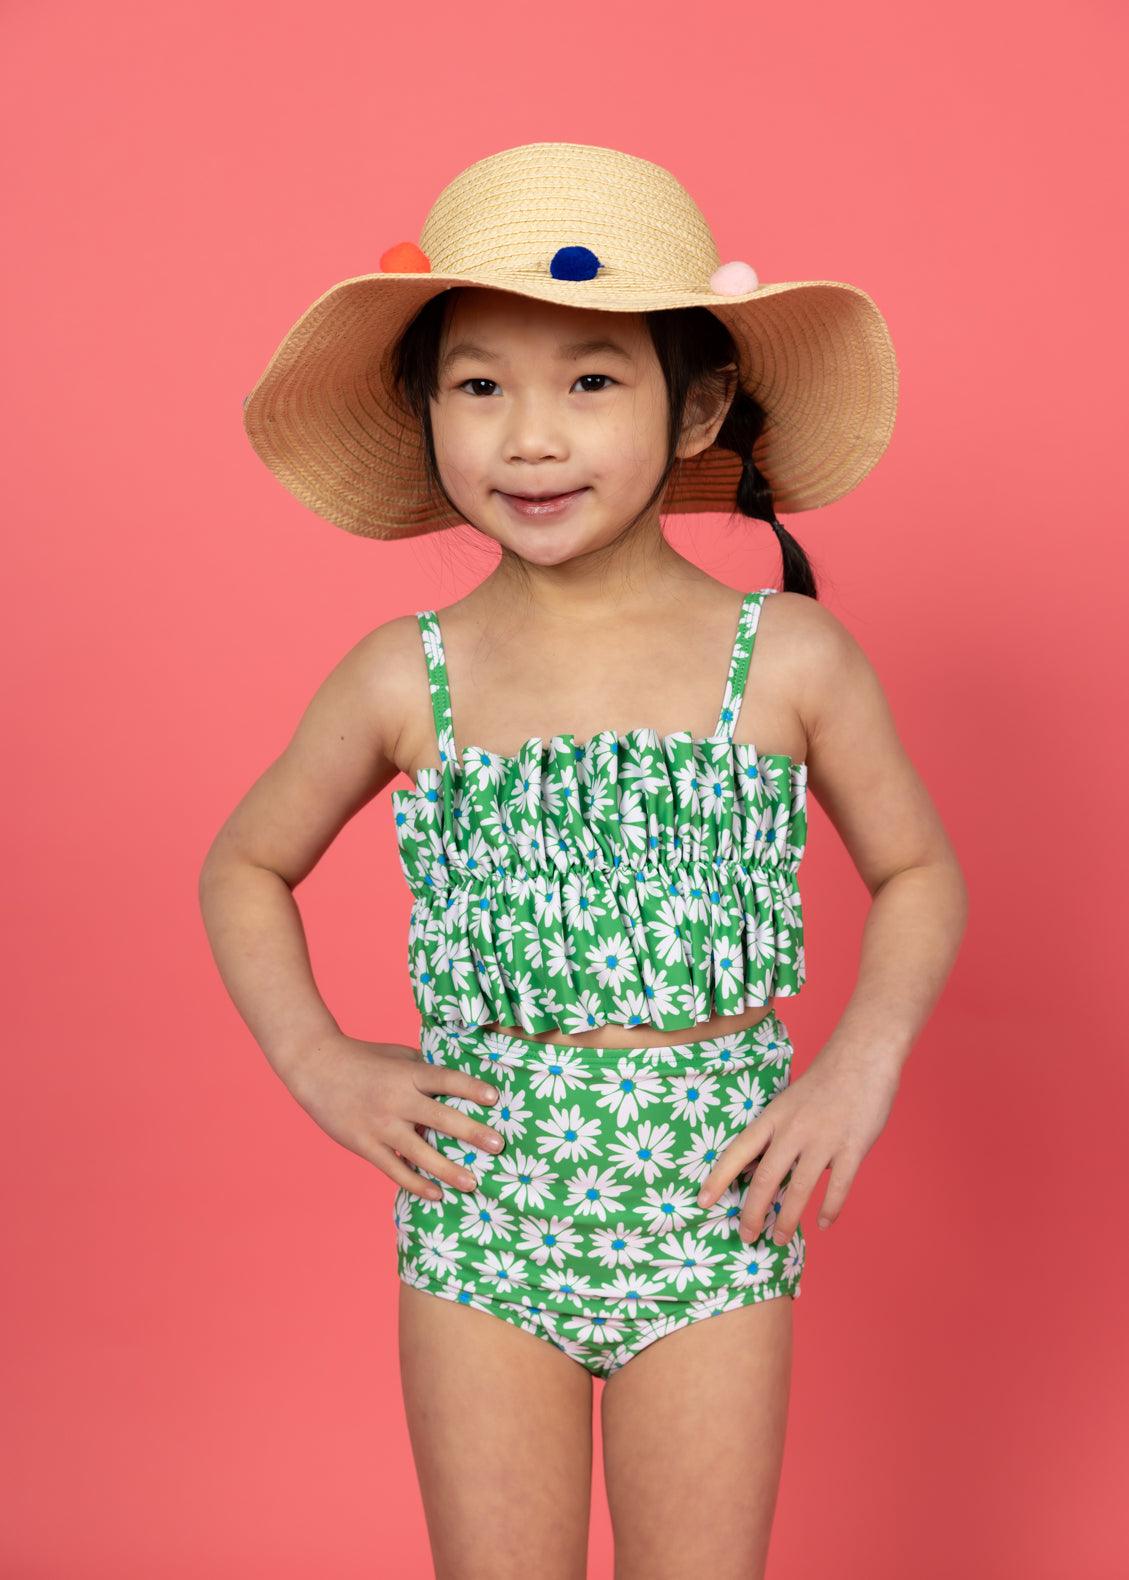 Girls Crop Top Swimsuit - Green Daisy